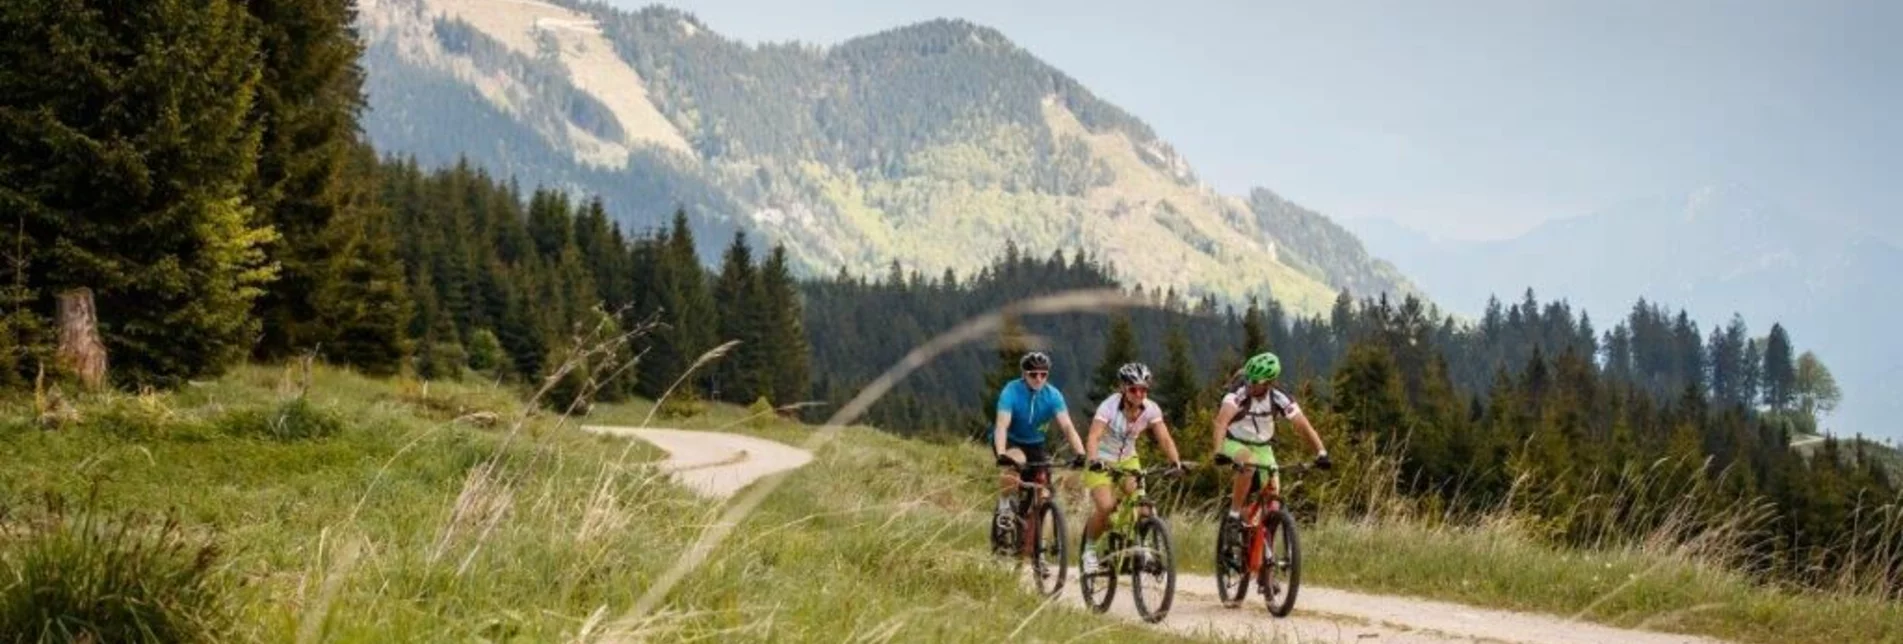 Mountain Biking Auf den Spuren der Waldbahn - Touren-Impression #1 | © TV Gesäuse